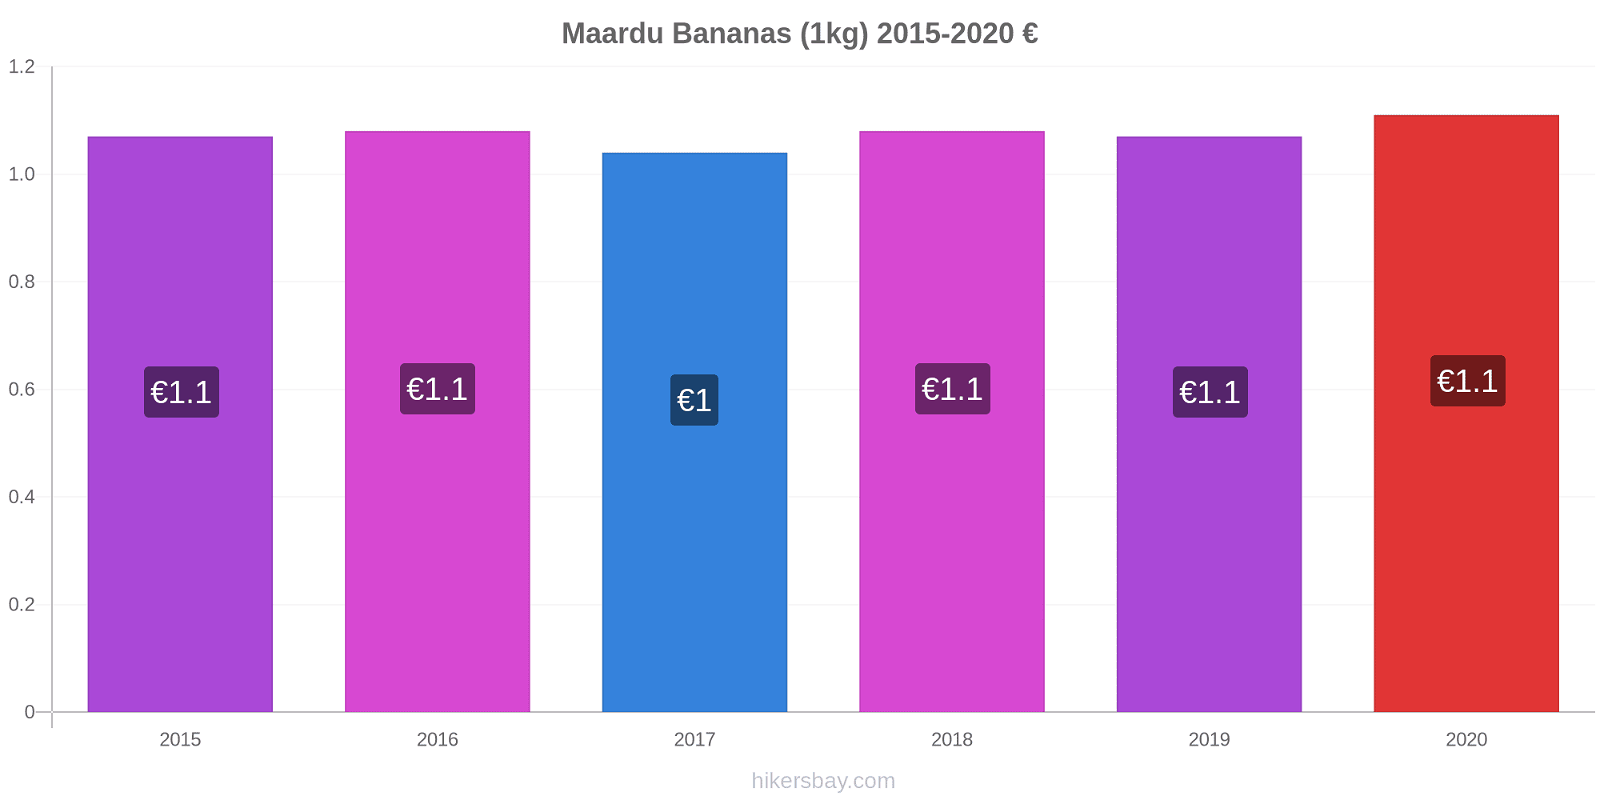 Maardu variação de preço Banana (1kg) hikersbay.com